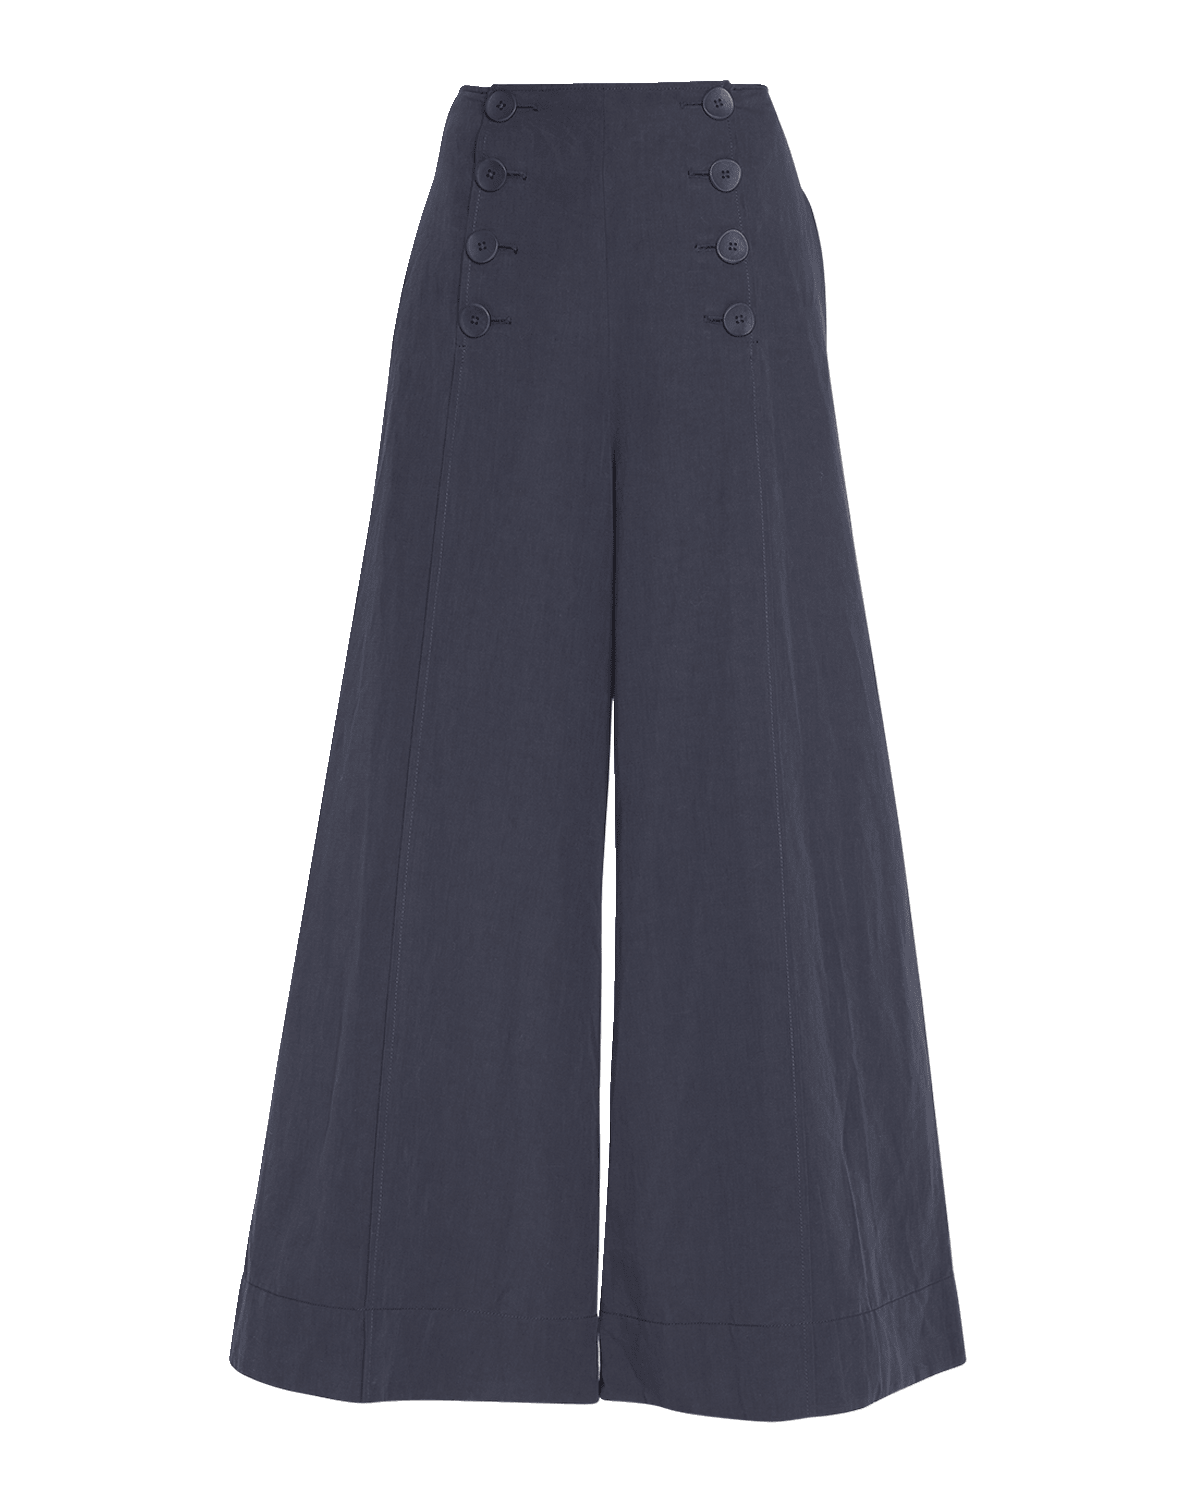 Knit Crepe High Rise Culotte Sailor Pant, Women's Trousers